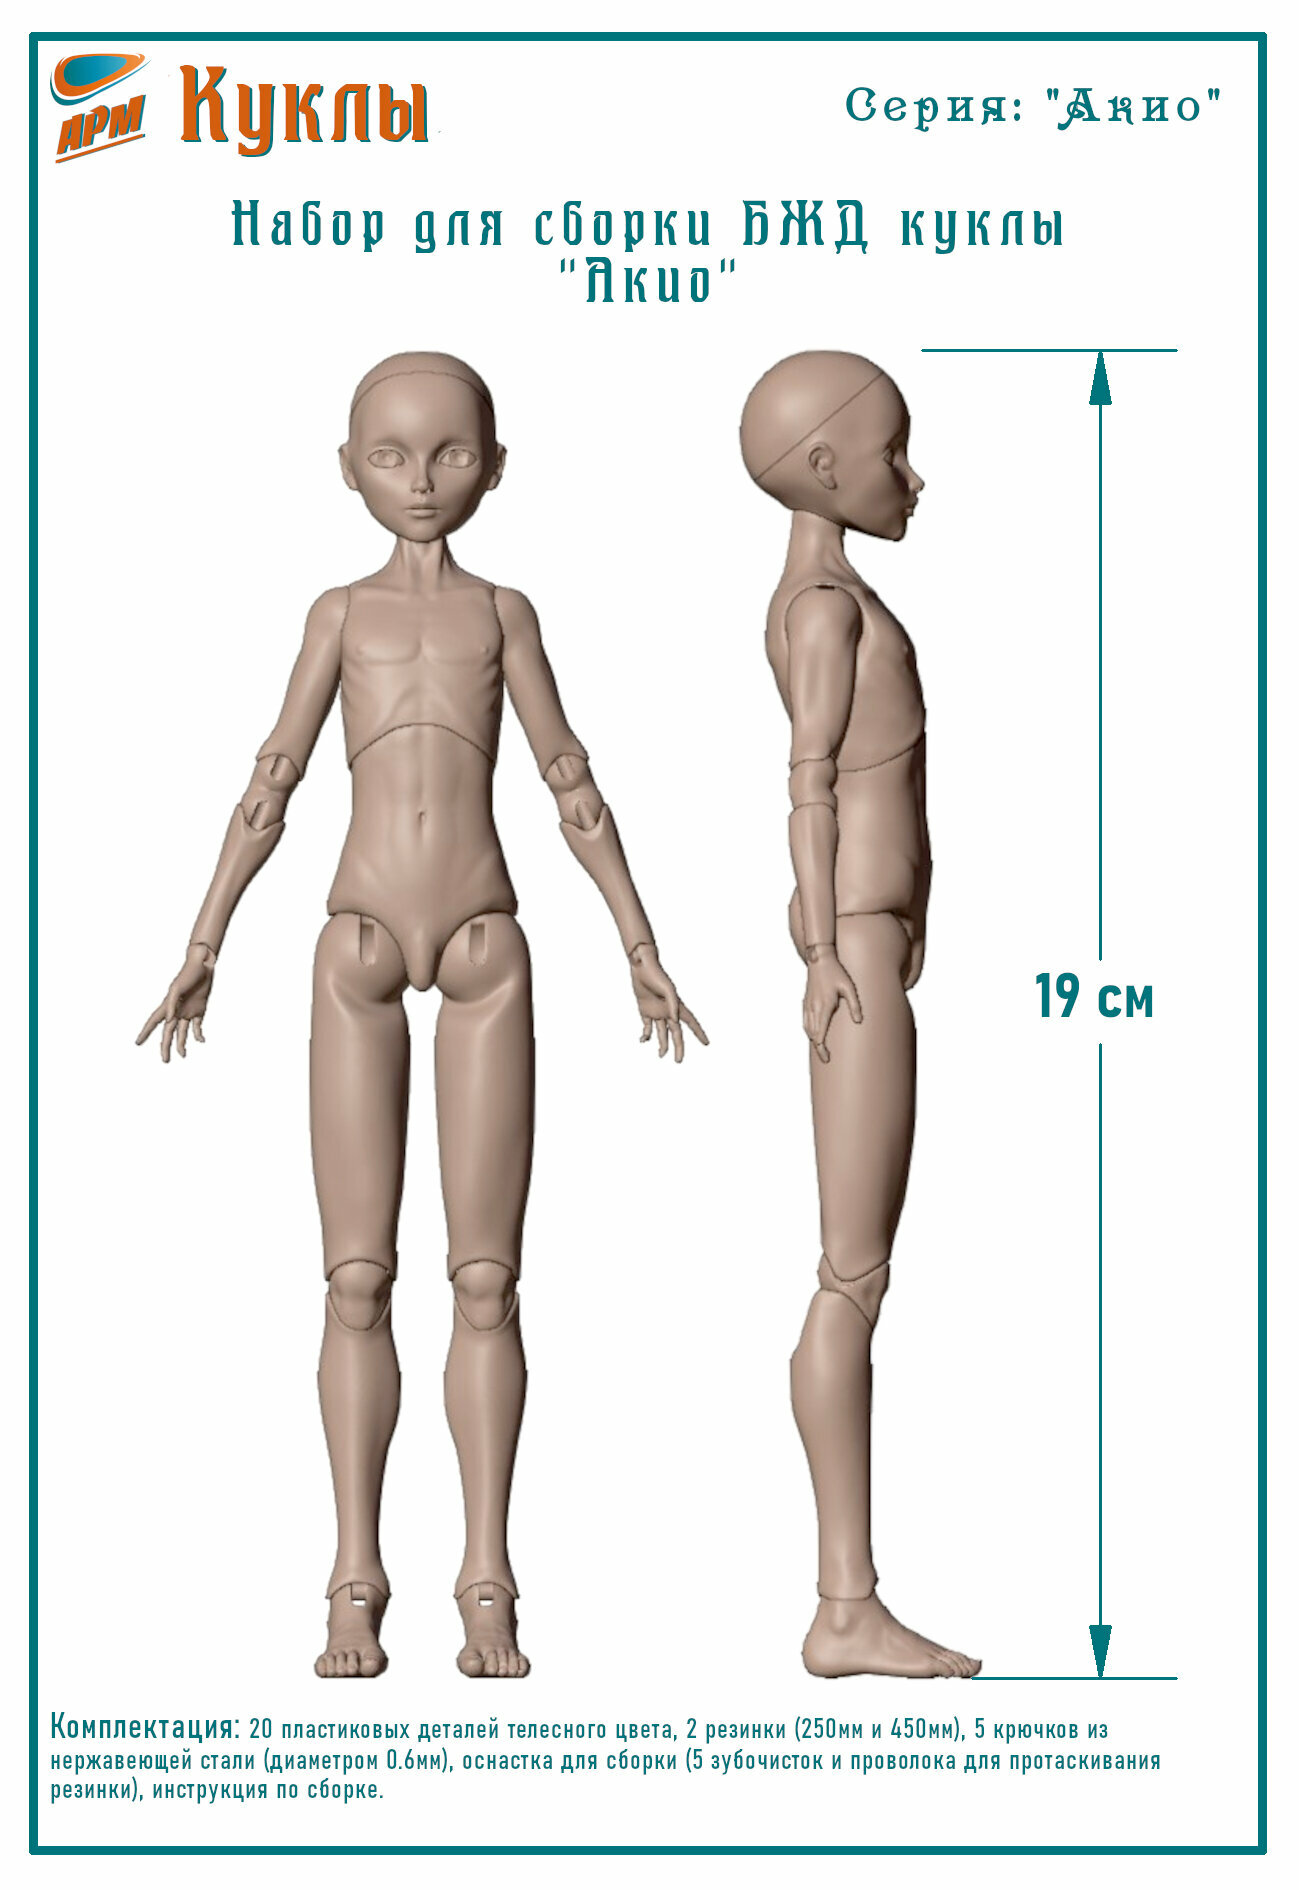 Набор для сборки тела БЖД куклы "Акио", серия "Акио", высота 19 см